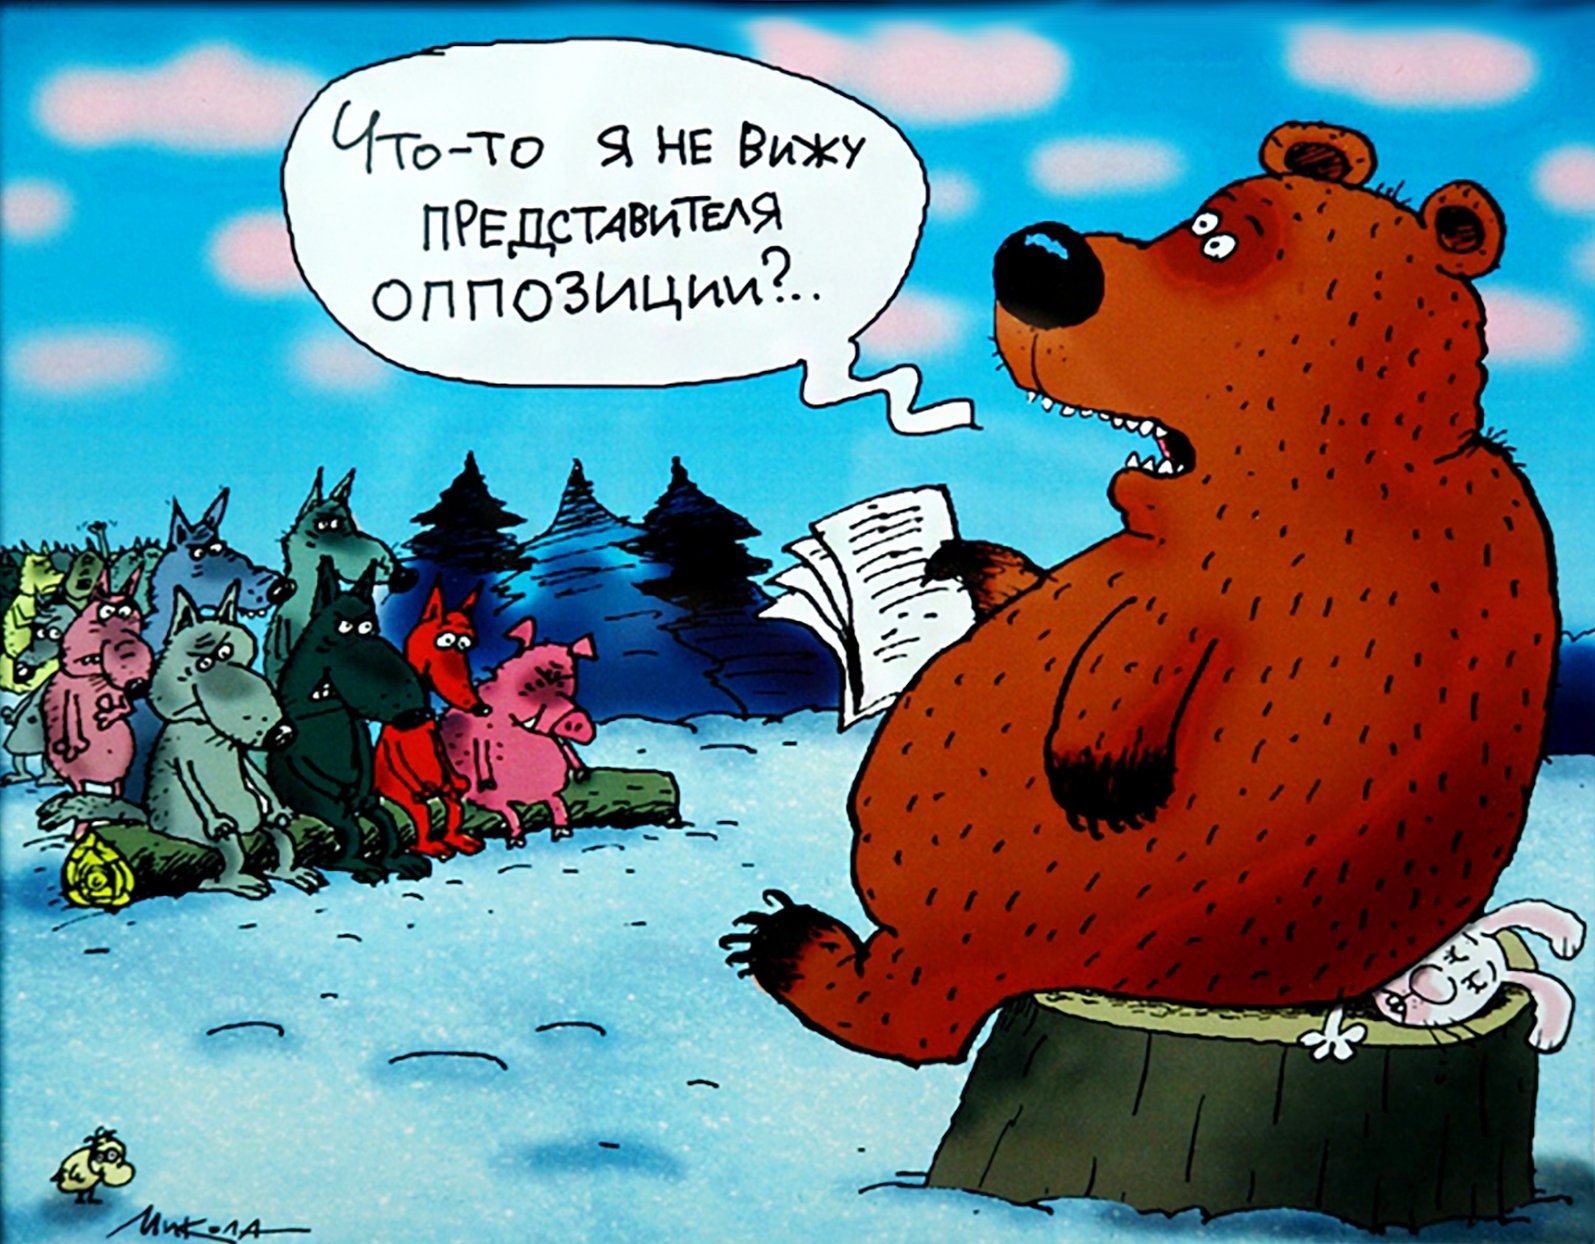 Неужели сами не видите. Медведь карикатура. Шутки про медведя. Анекдоты про медведей смешные. Шутки про медведя в России.